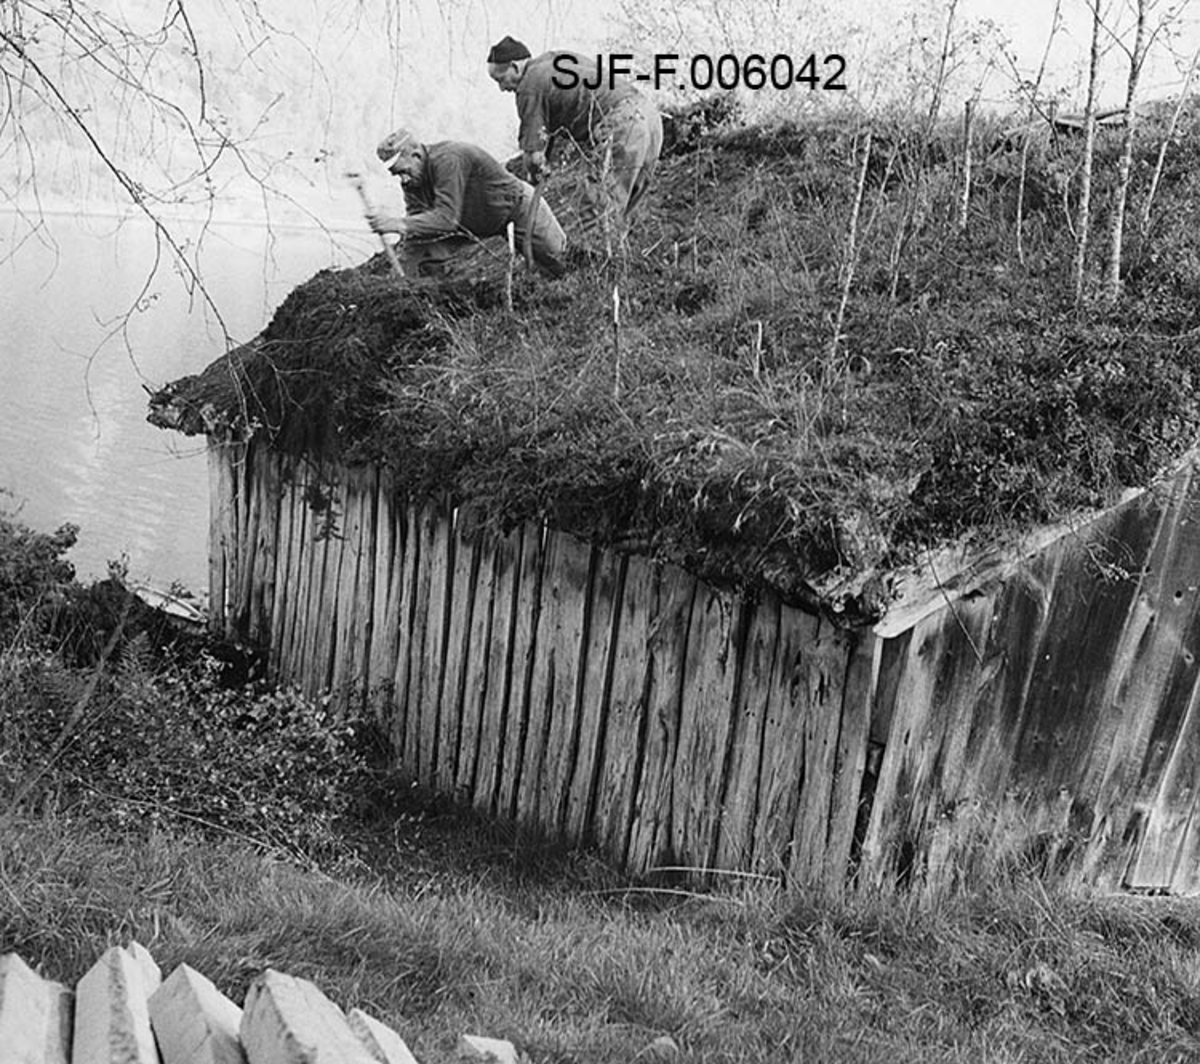 Naustet til Nikolai J. Gjesdal (1889-1973) ved Vassenden i Jølster i Sunnfjord i Sogn og Fjordane.  Fotografiet er tatt fra bakkekammen på oversida av bygningen, mot den ene av langveggene og den ene halvdelen av saltaket. Naustet er en umalt, bordkledd stavkonstruksjon med torvtekt sperretak.  På taket vokste det en god del lauvtrær da fotografiet ble tatt, noe som vel tyder på at det var ei stund siden taket ble lagt om da dette fotografiet ble tatt.  Det skjedde høsten 1968, da to arbeidskledde menn var i ferd med å spa ned torva fra taket.  Dette arbeidet ble gjort med henblikk på at naustet skulle demonteres og flyttes til Elverum, hvor det ble gjenoppført i Norsk Skogmuseums friluftsmuseum på Prestøya.  I forgrunnen til venstre ser vi endene på en del bjelker, i bakgrunnen vannspeilet på Jølstravatnet. 

Jølsternaustet er 790 centimeter langt og 456 centimeter bredt og har følgelig ei grunnflate på 36 kvadratmeter.  På gavlen mot vassdraget er rafthøyden 217 og mønehøyden 365 centimeter.  På den bakre eller vestre gavlen er rafthøyden 125 og mønehøyden 258 centimeter. 